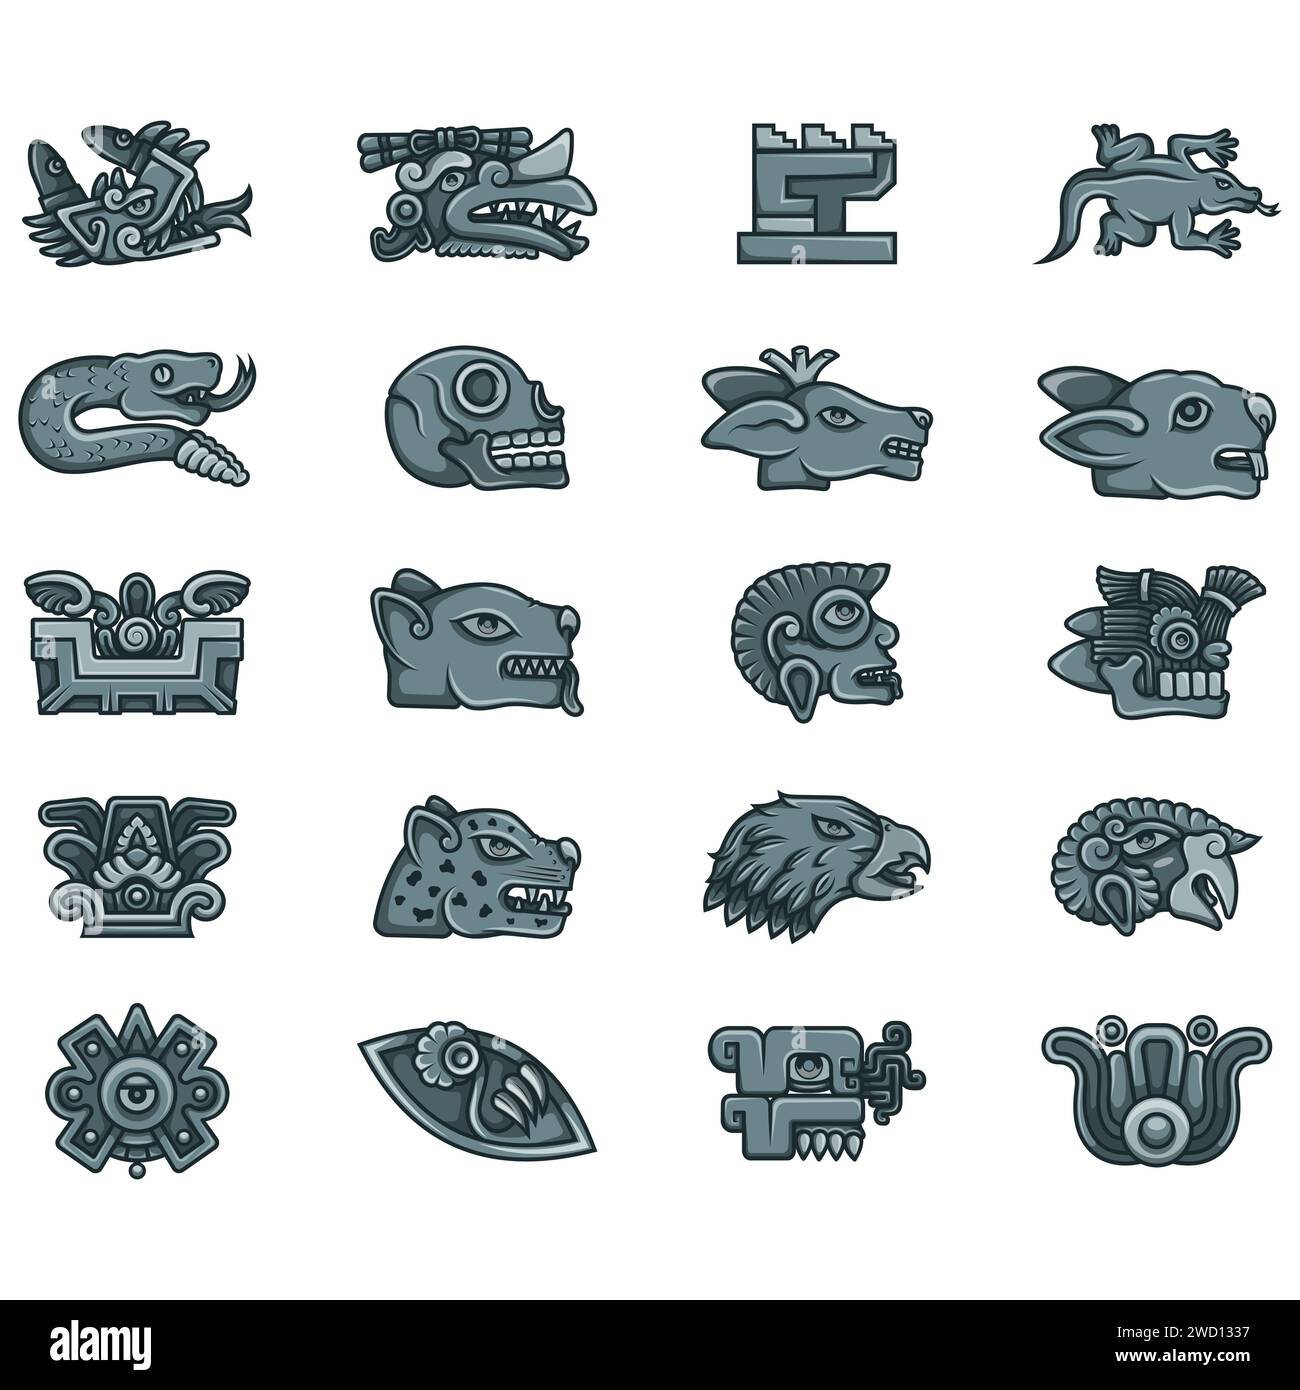 vector design of symbols of ancient aztec civilization hieroglyphs of the aztec calendar 2WD1337